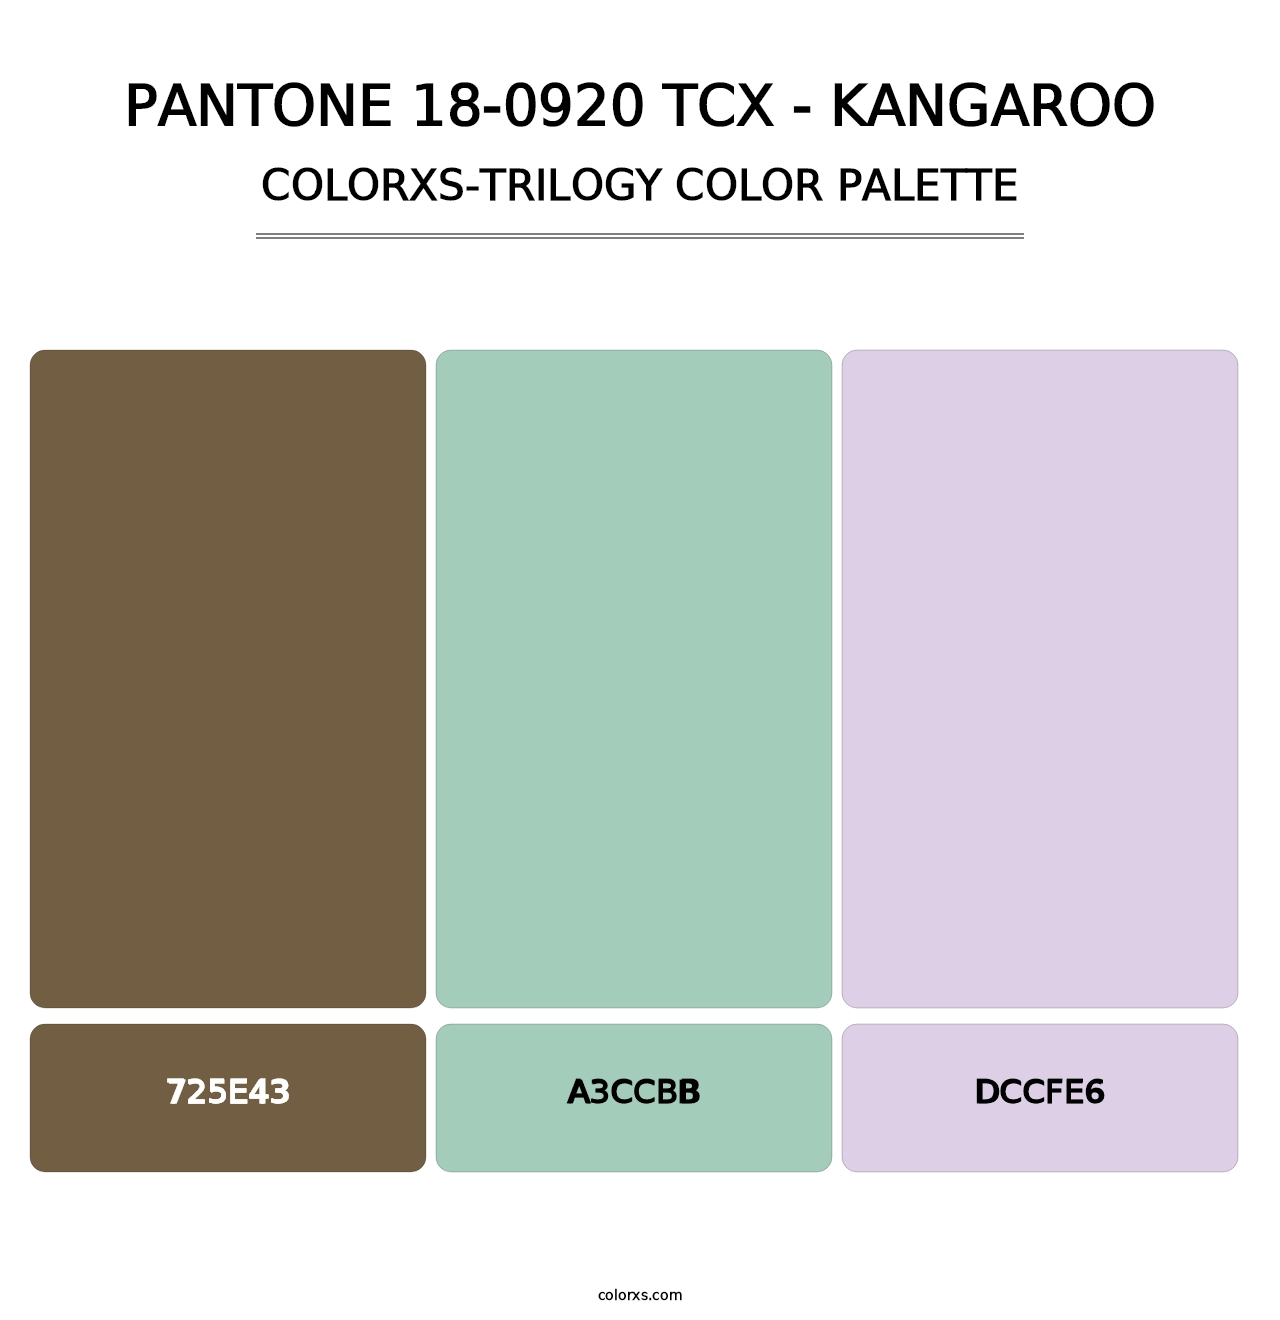 PANTONE 18-0920 TCX - Kangaroo - Colorxs Trilogy Palette